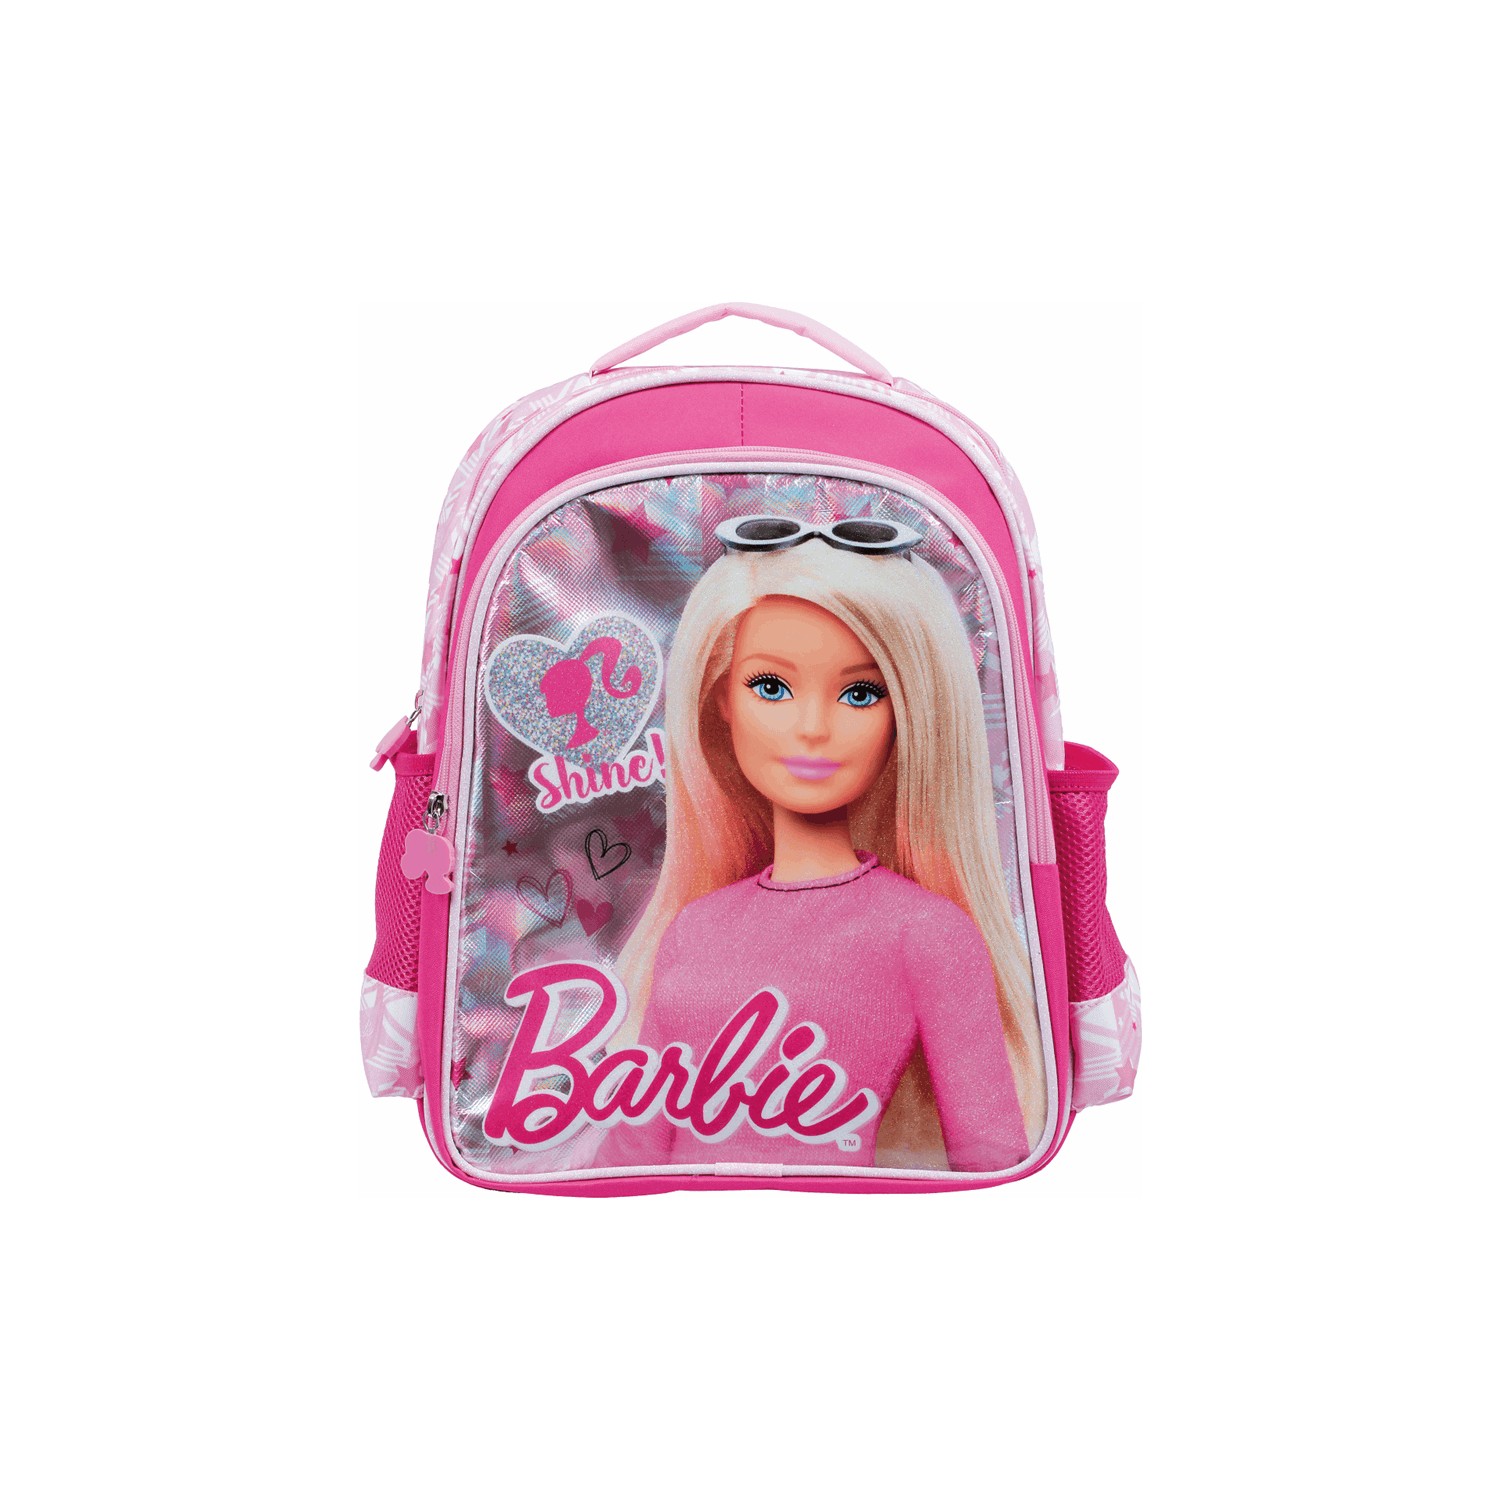 Школьный рюкзак Barbie Shine, розовый чехол mypads профессор бумажый дом для alcatel shine lite 5080x 5 0 задняя панель накладка бампер